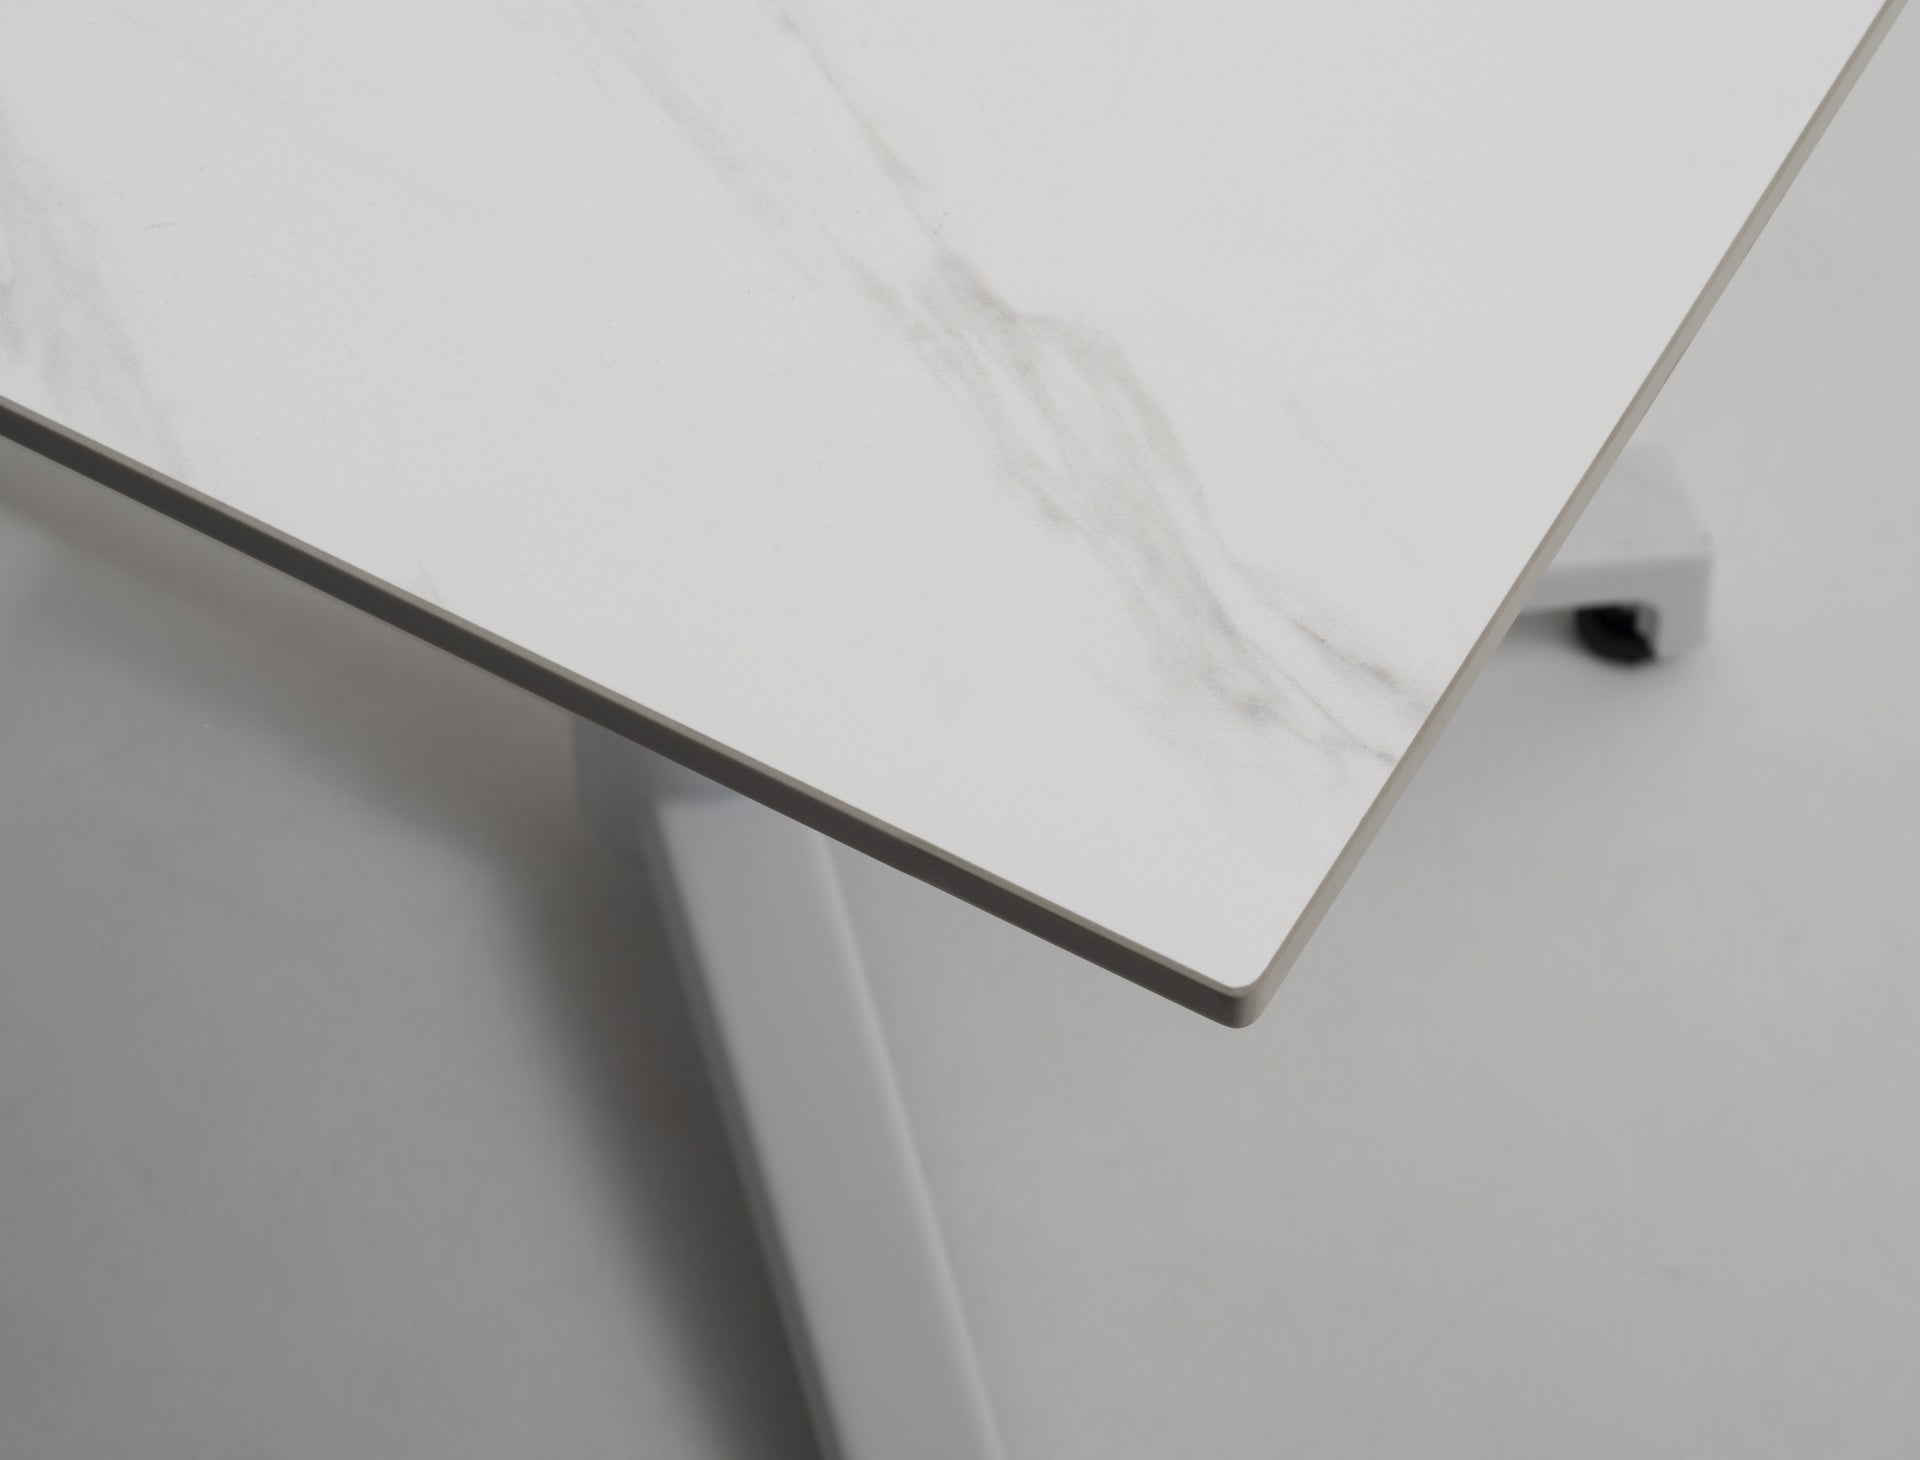 Robuster, klappbarer Gartentisch Thilo mit wetterfester Sinterstone-Tischplatte in edler Marmoroptik, erhältlich in Schwarz und Weiß, ideal für Outdoor-Gestaltung und platzsparende Lagerung.